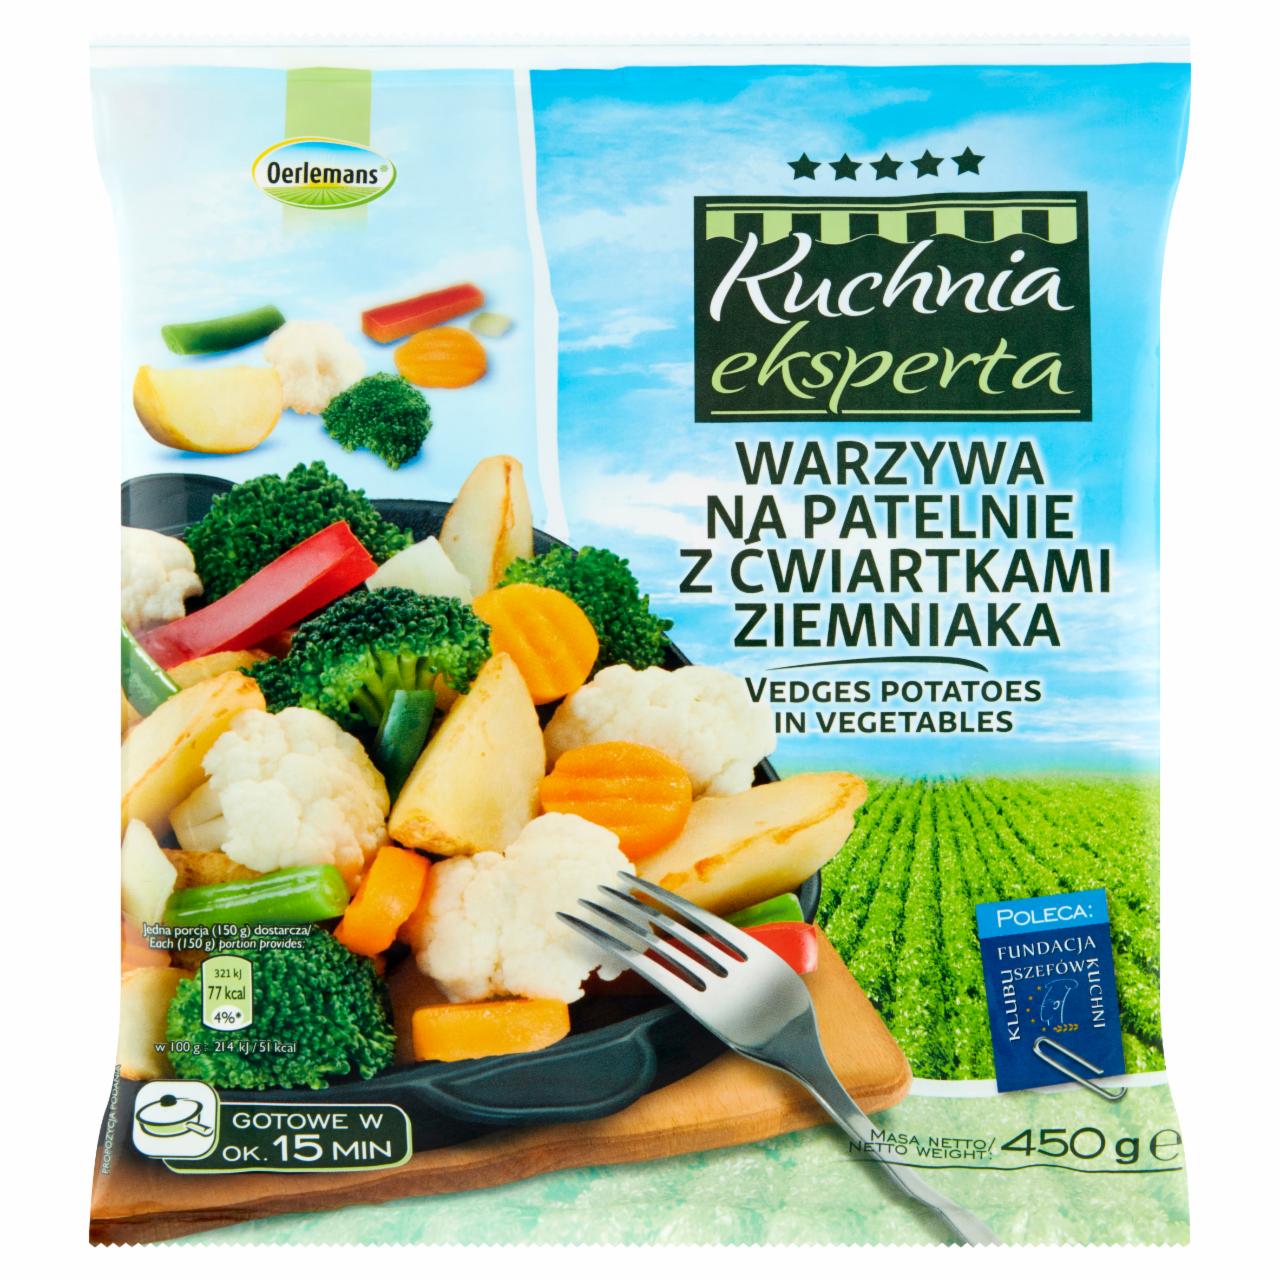 Zdjęcia - Oerlemans Kuchnia eksperta Warzywa na patelnię z ćwiartkami ziemniaka 450 g